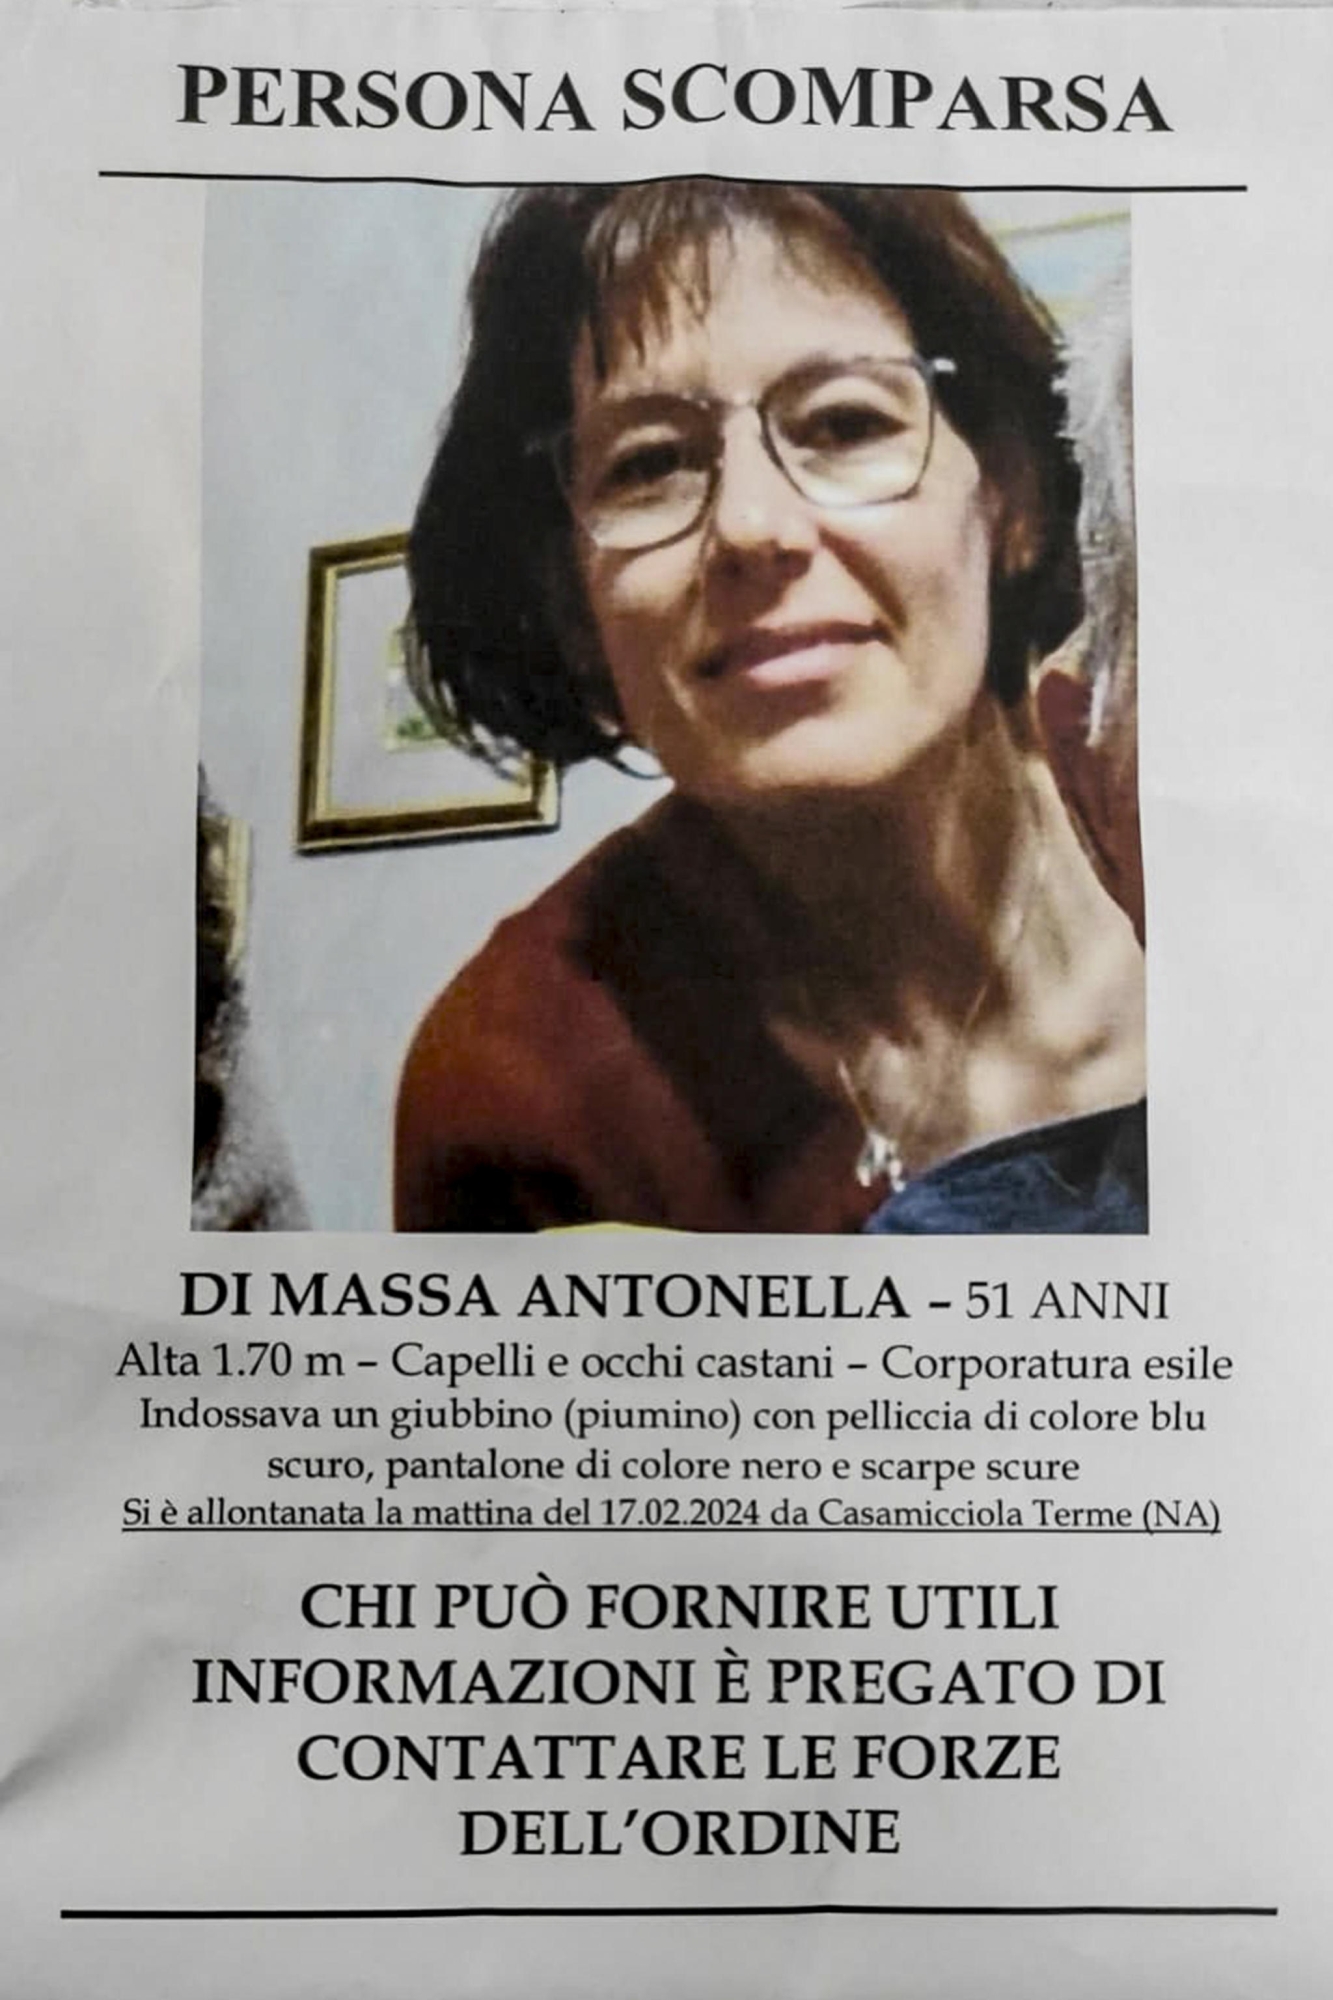 La locandina affissa nei giorni scorsi ad Ischia con  cui i familiari della 51enne Antonella Di Massa, trovata morta oggi,  chiedevano di avvertire le forze dell'ordine per eventuali avvistamenti o notizie riguardanti la donna , 29   Febbraio 2024. ANSA